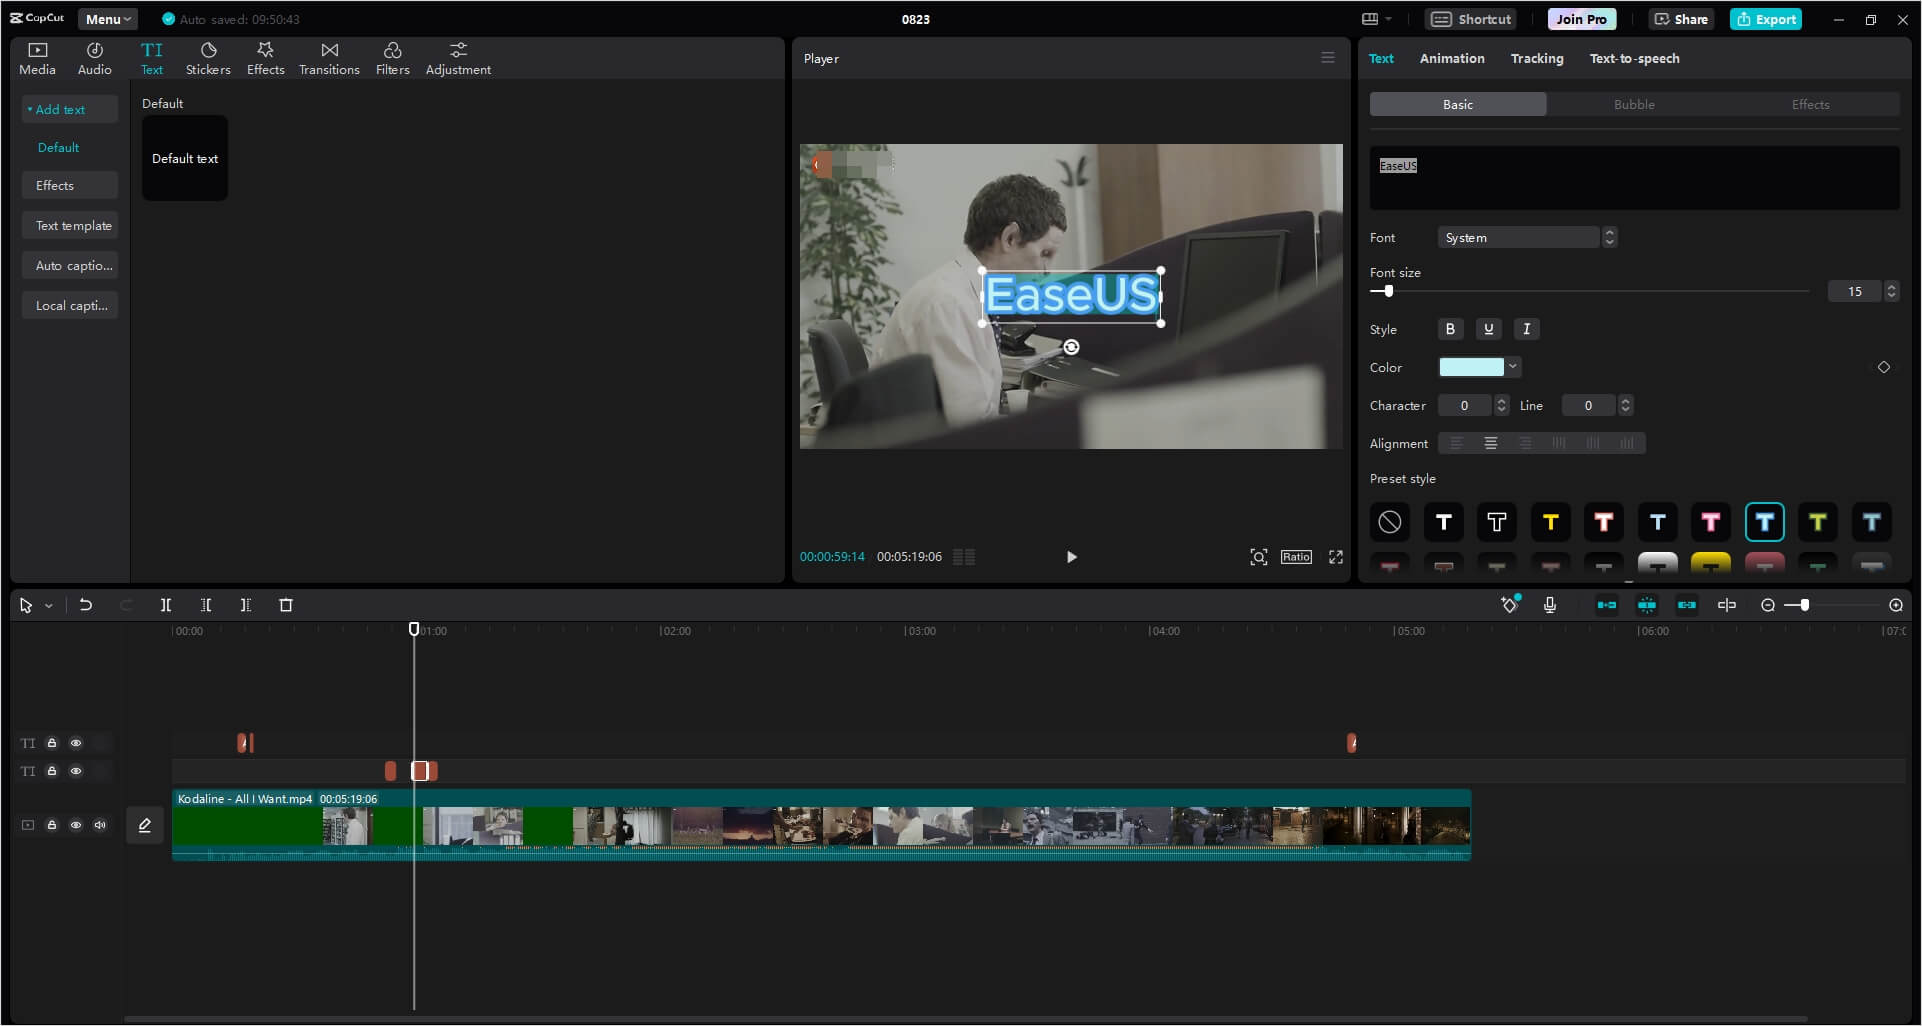 More Capcut Video Editing Tools